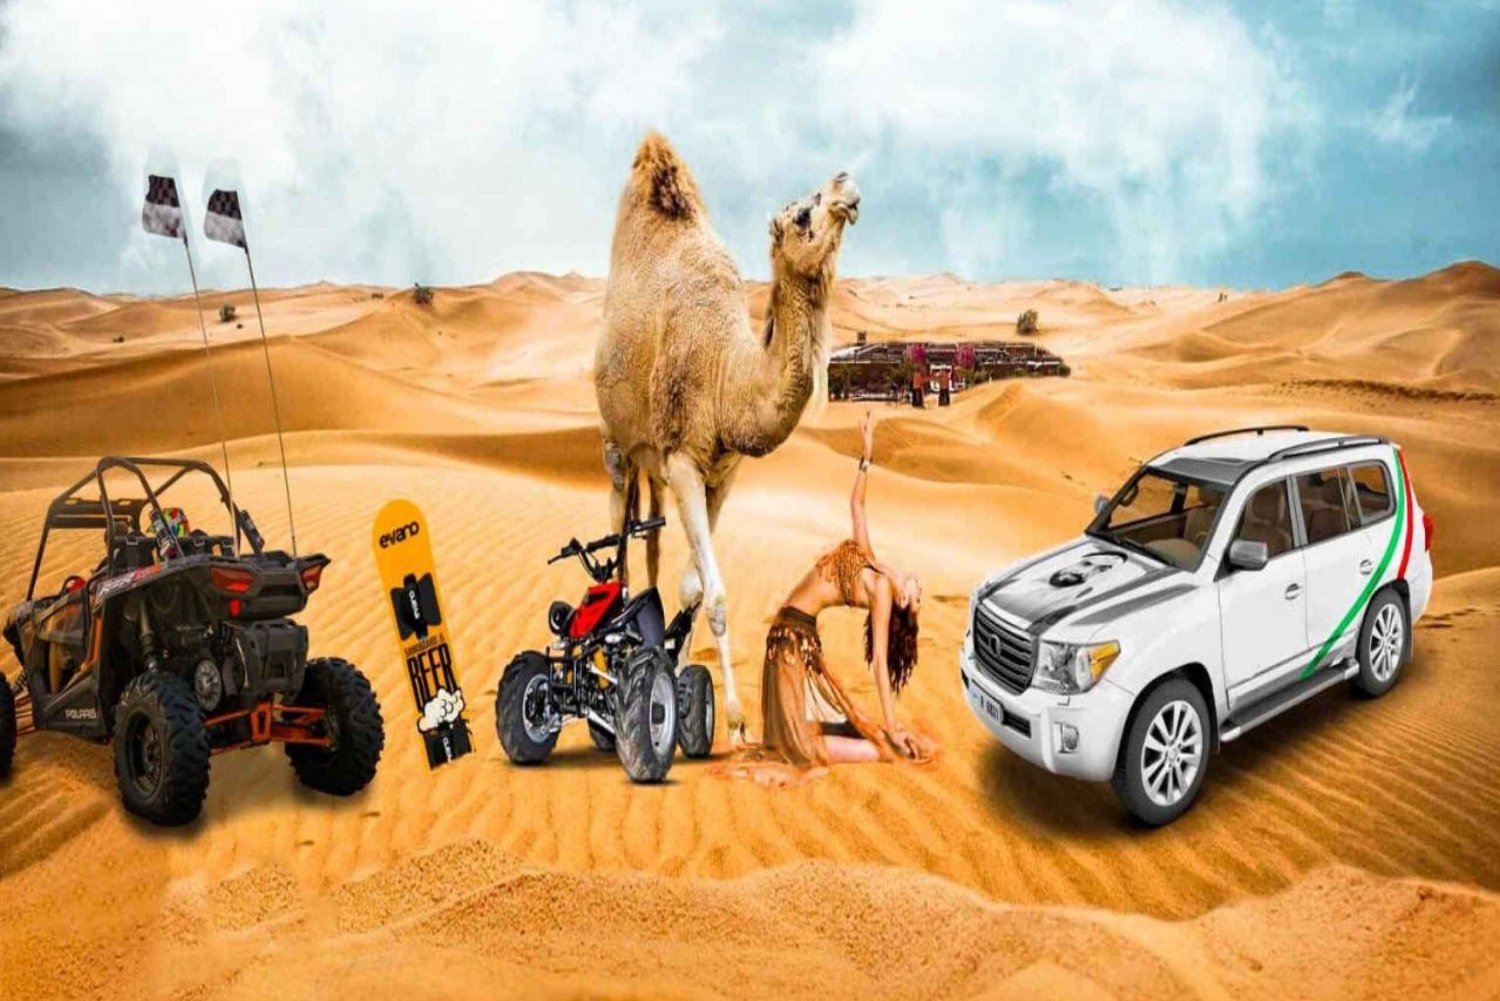 Safáris no deserto em Dubai, sandboard, churrasco, passeio de camelo e shows